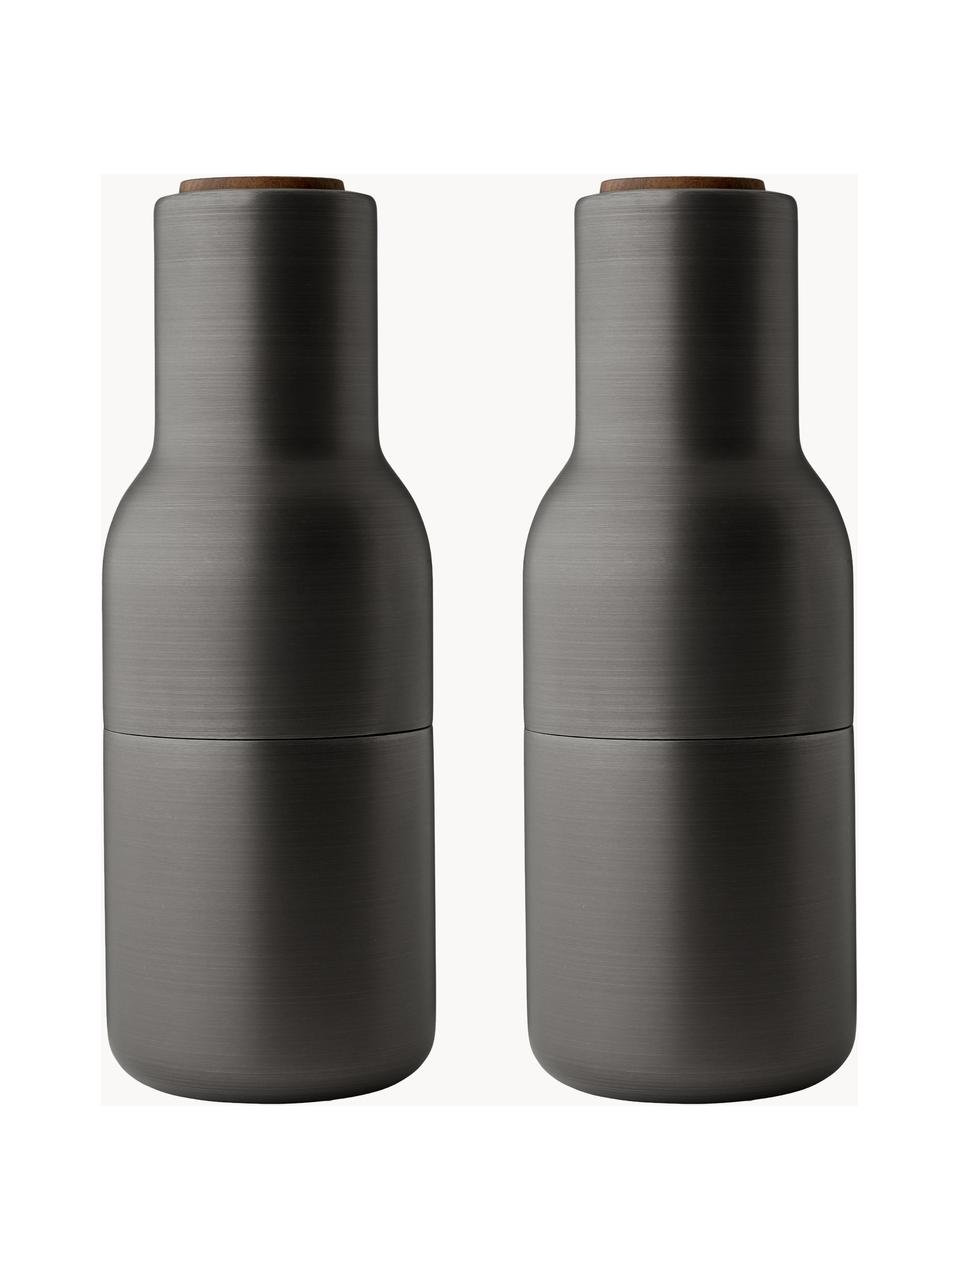 Designer zout- & pepermolen Bottle Grinder met walnoothouten deksel, set van 2, Deksel: walnoothout, Antraciet geborsteld, walnoothout, Ø 8 x H 21 cm